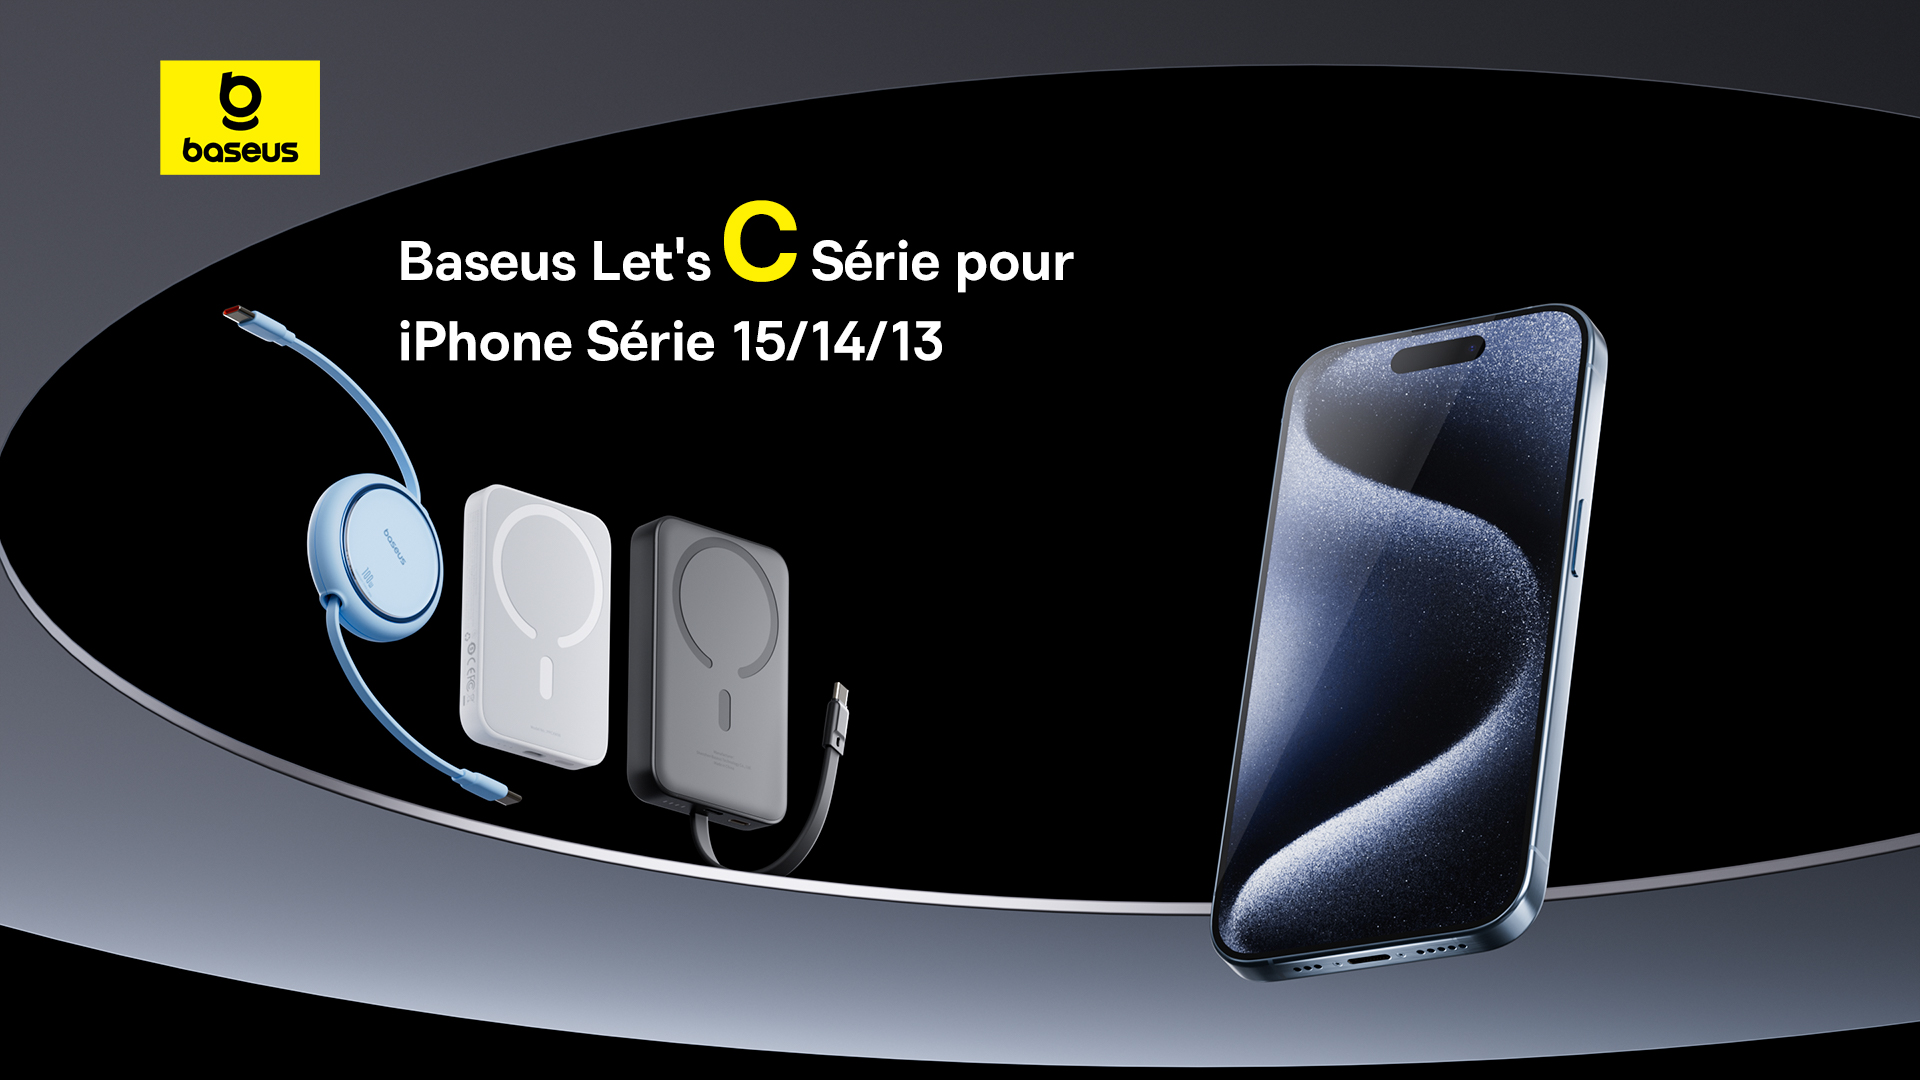 Les accessoires de Baseus sont compatibles avec les derniers iPhone, notamment pour ce qui est de la recharge sans fil. © Baseus